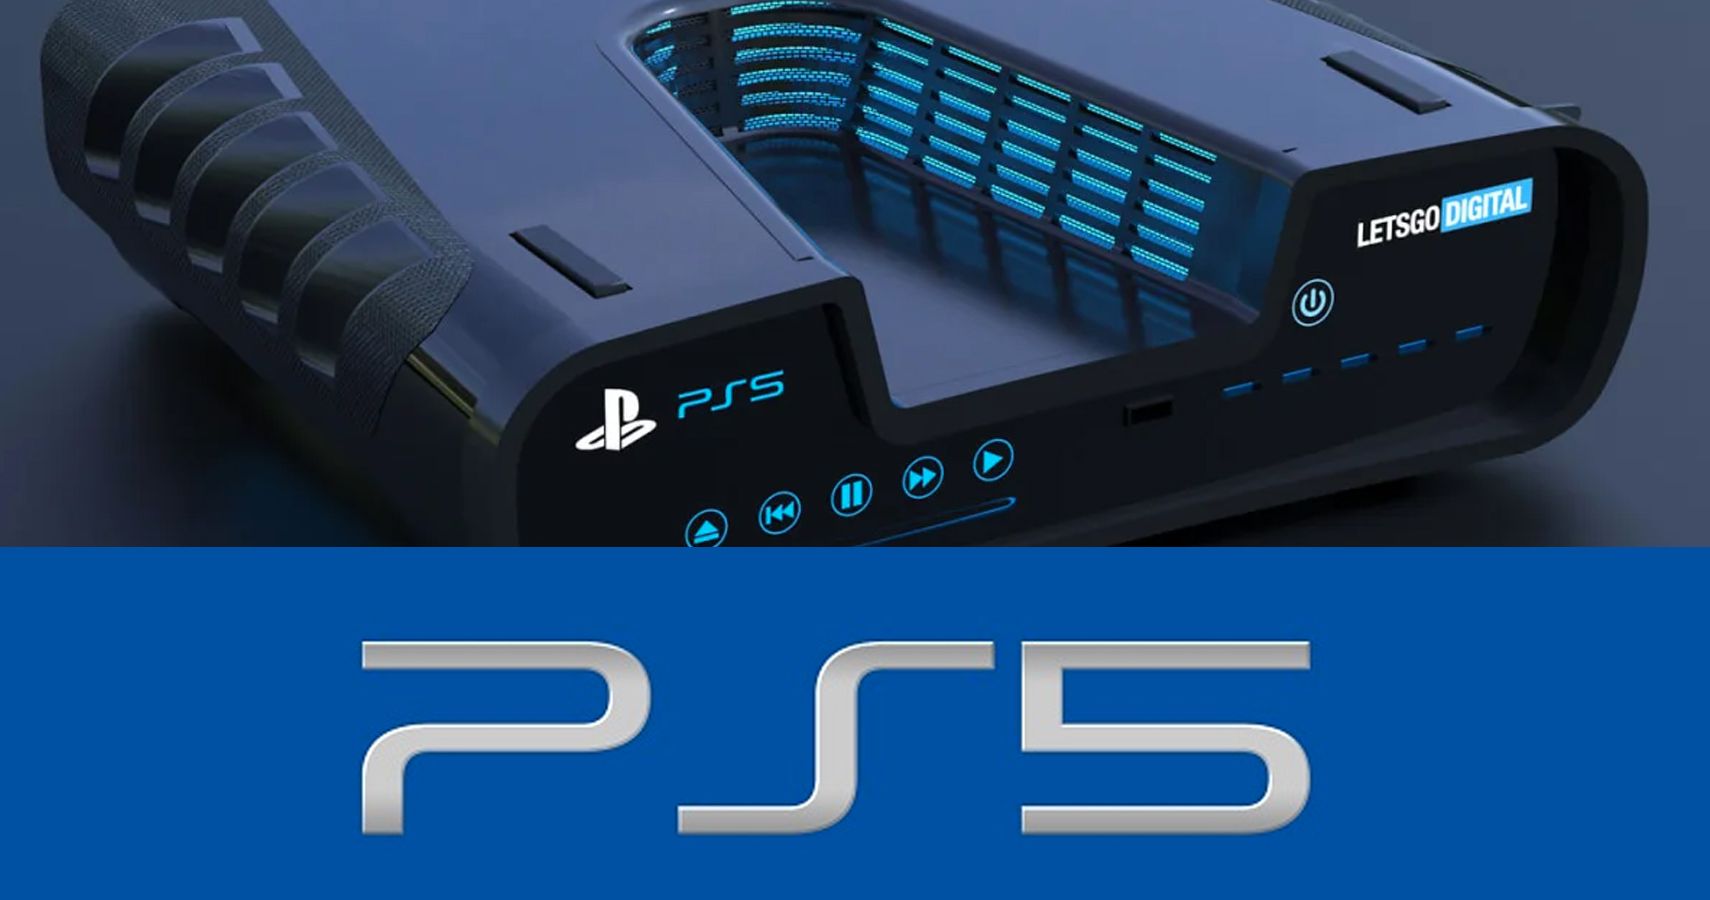 Fotografias ao processador da PS5 revelam más notícias - Leak